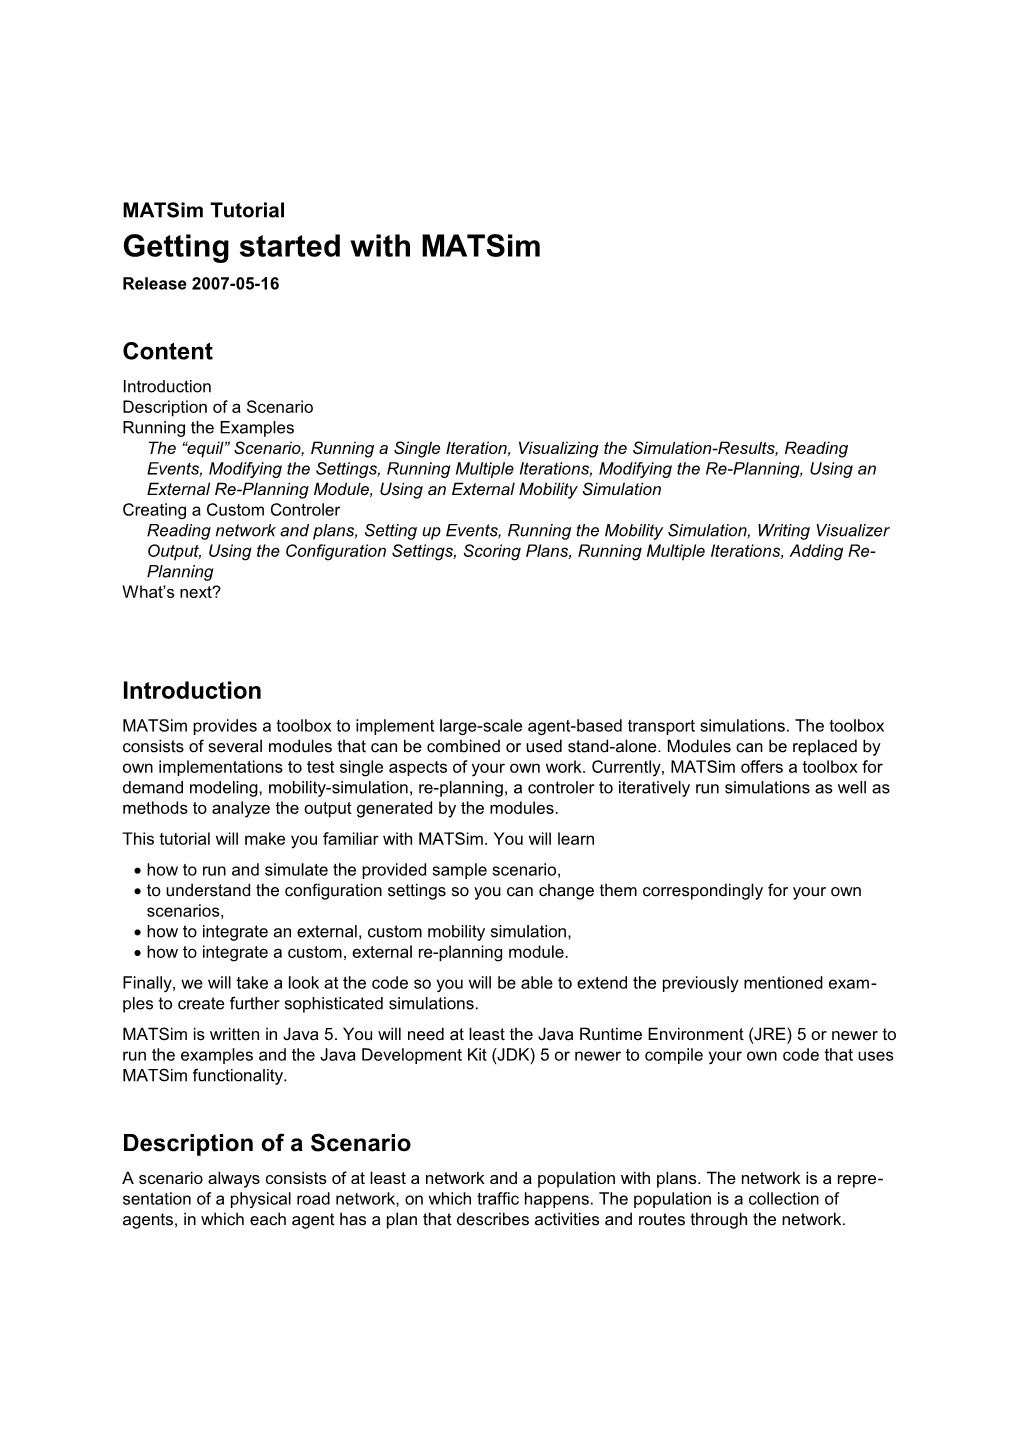 Matsim Tutorial: Getting Started with Matsim1